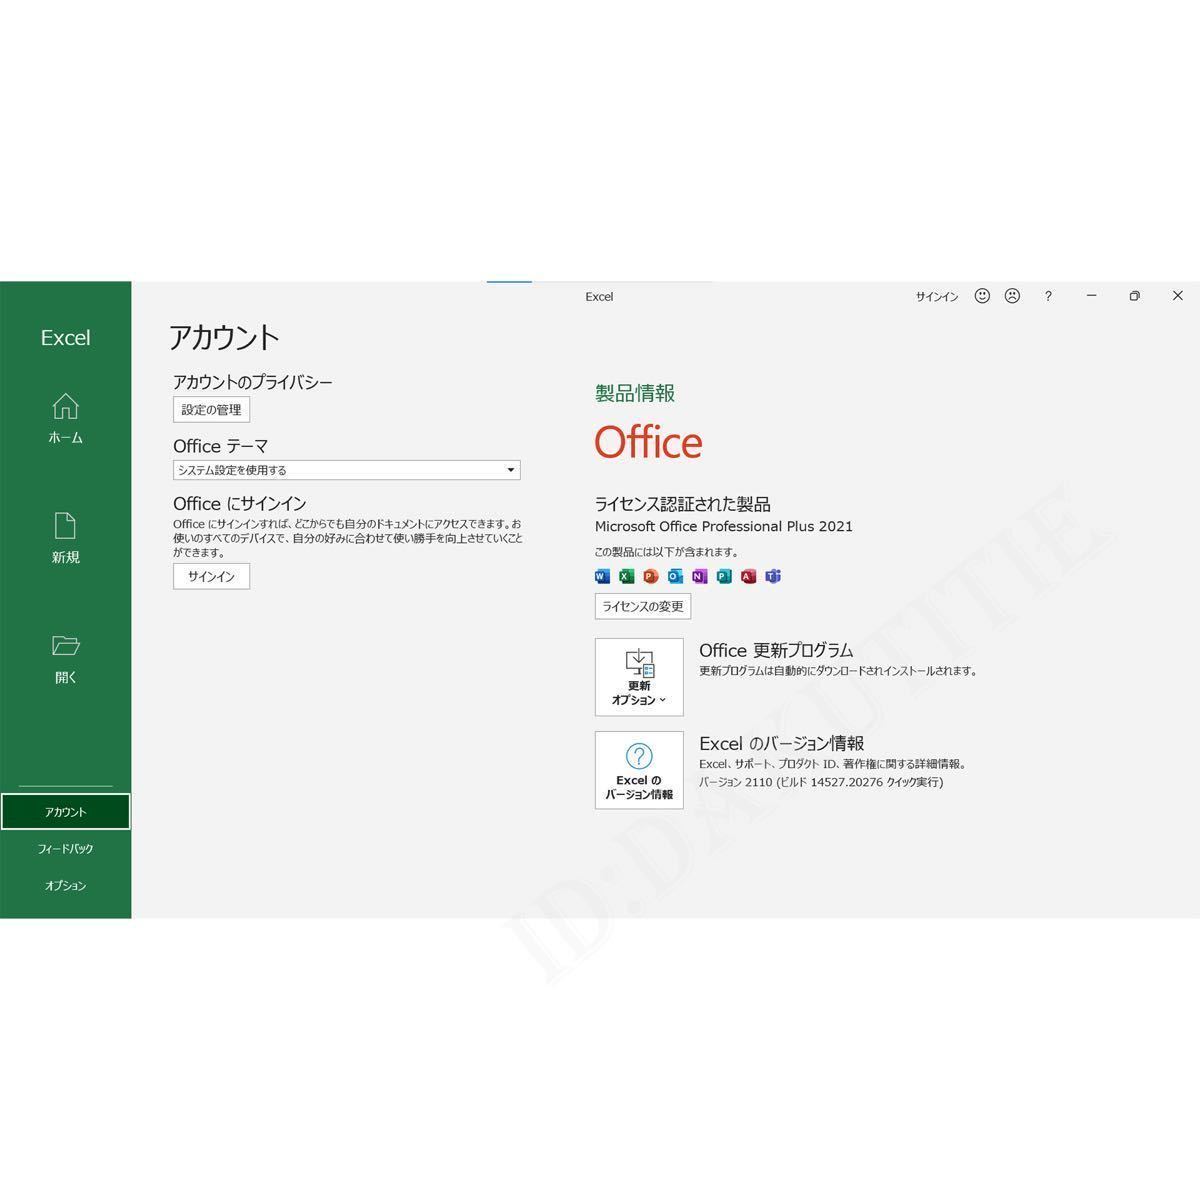 [即納品]永年正規保証 Office 2021 Professional Plus プロダクトキー Windows10/11対応正規オフィス認証保証 Access Word Excel手順書付67